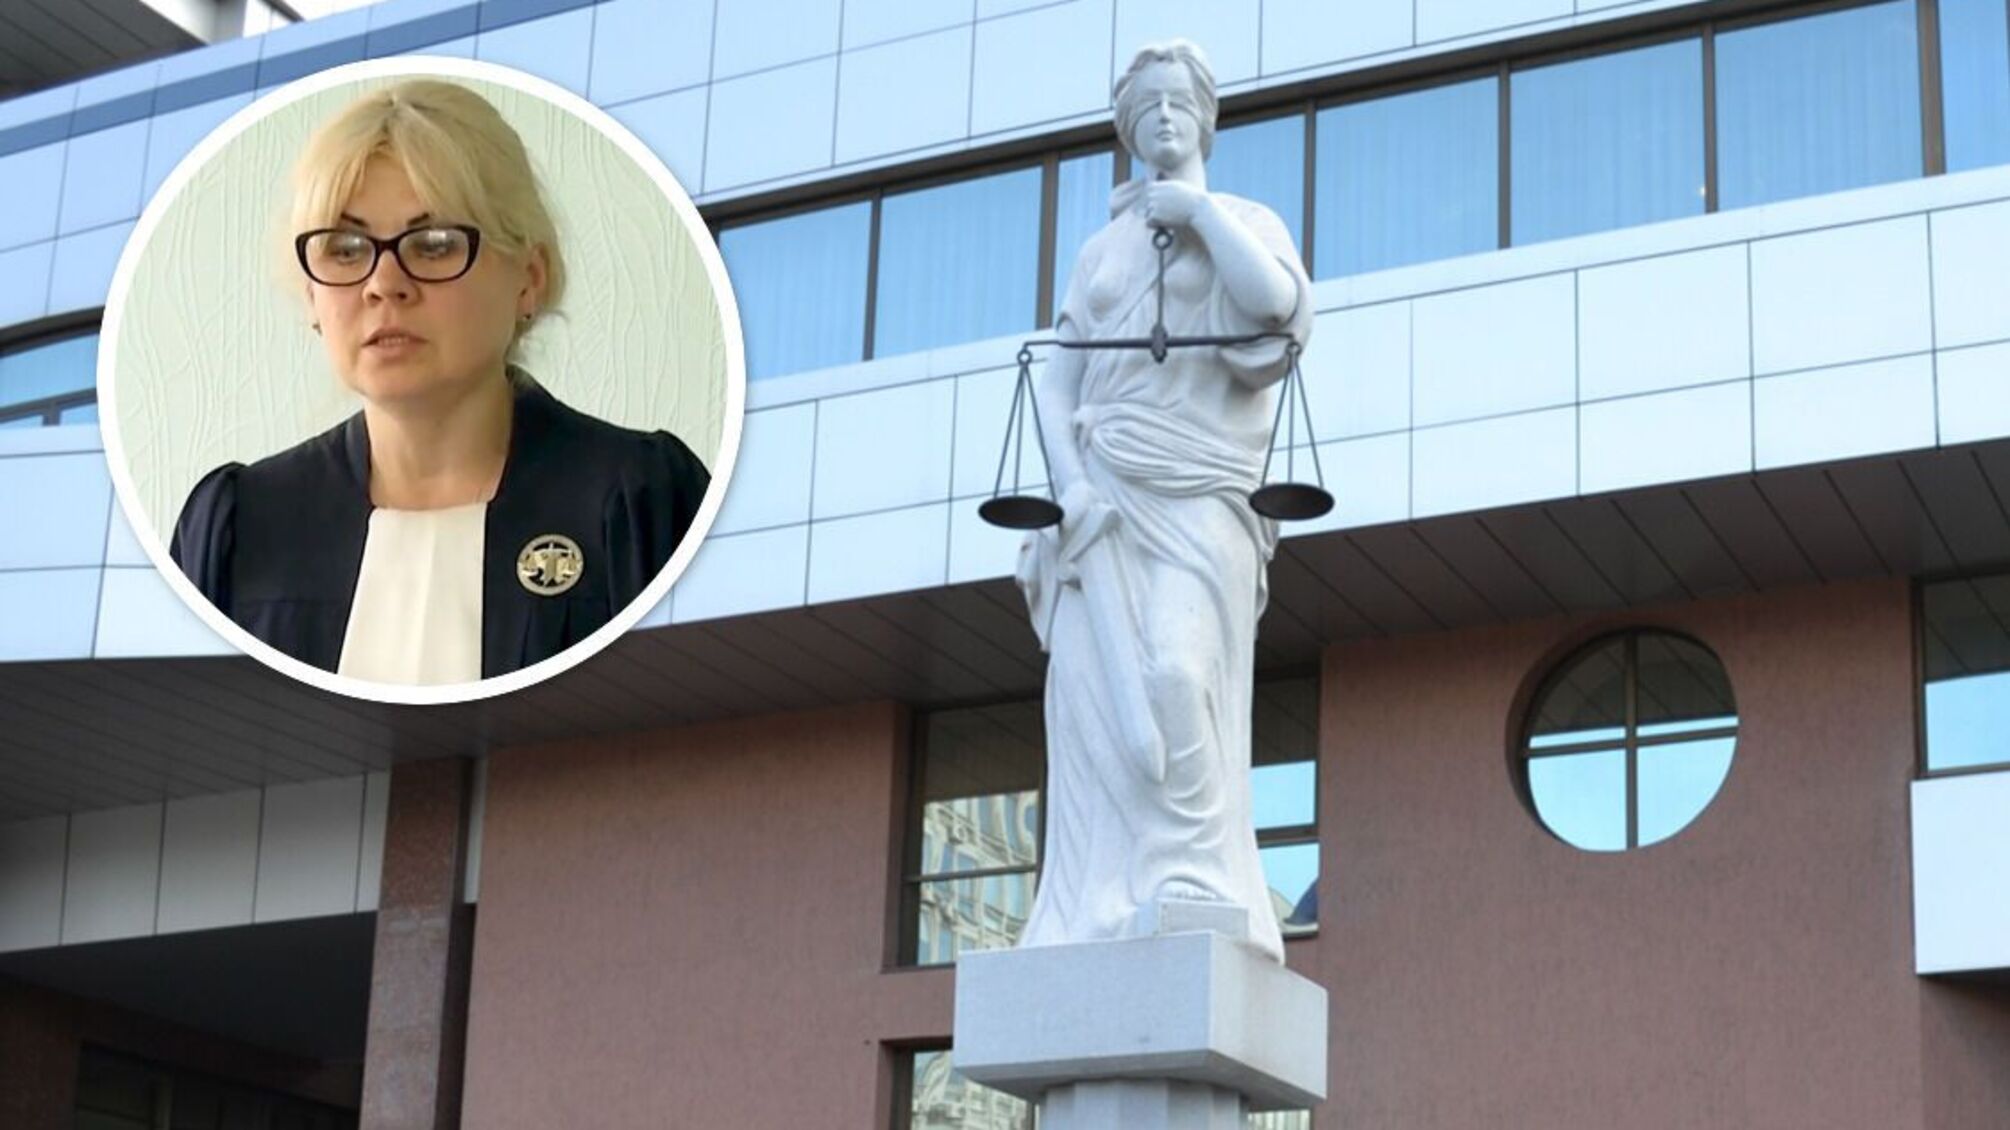 Состояние и вопросы к декларации: чем известна столичная судья Кашперская, которую обвиняют в сомнительном решении на миллион?